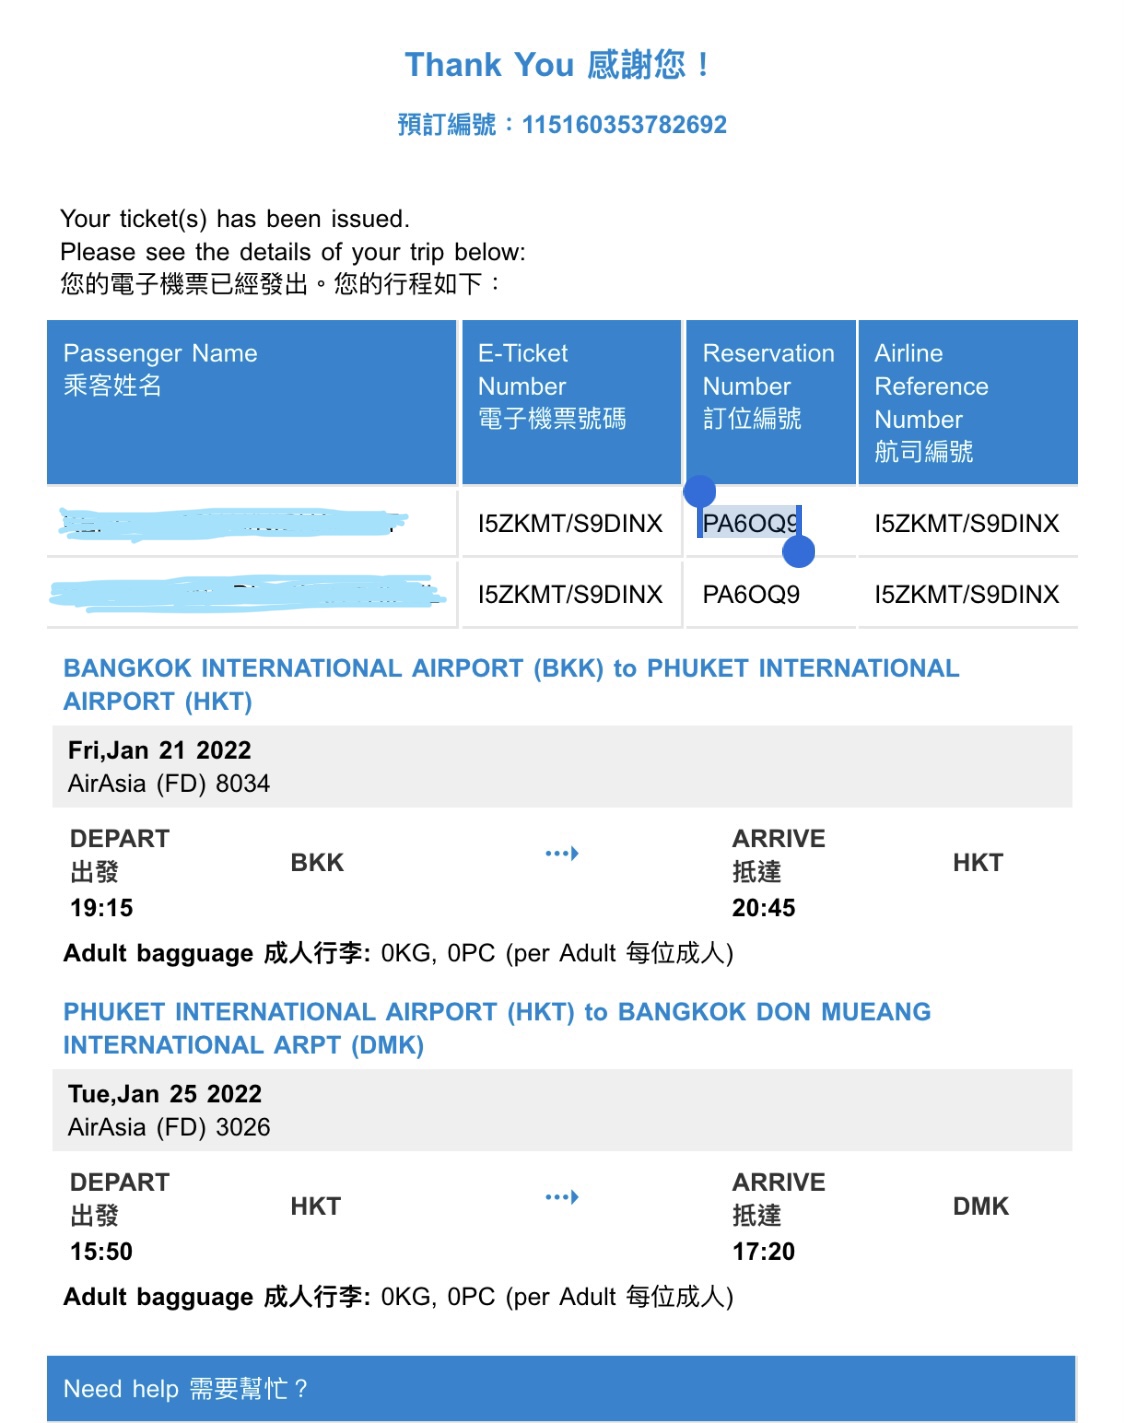 จองตั๋วเครื่องบิน Airasia ผ่าน Hutchgo แล้วตรวจสอบ Booking ไม่พบ - Pantip